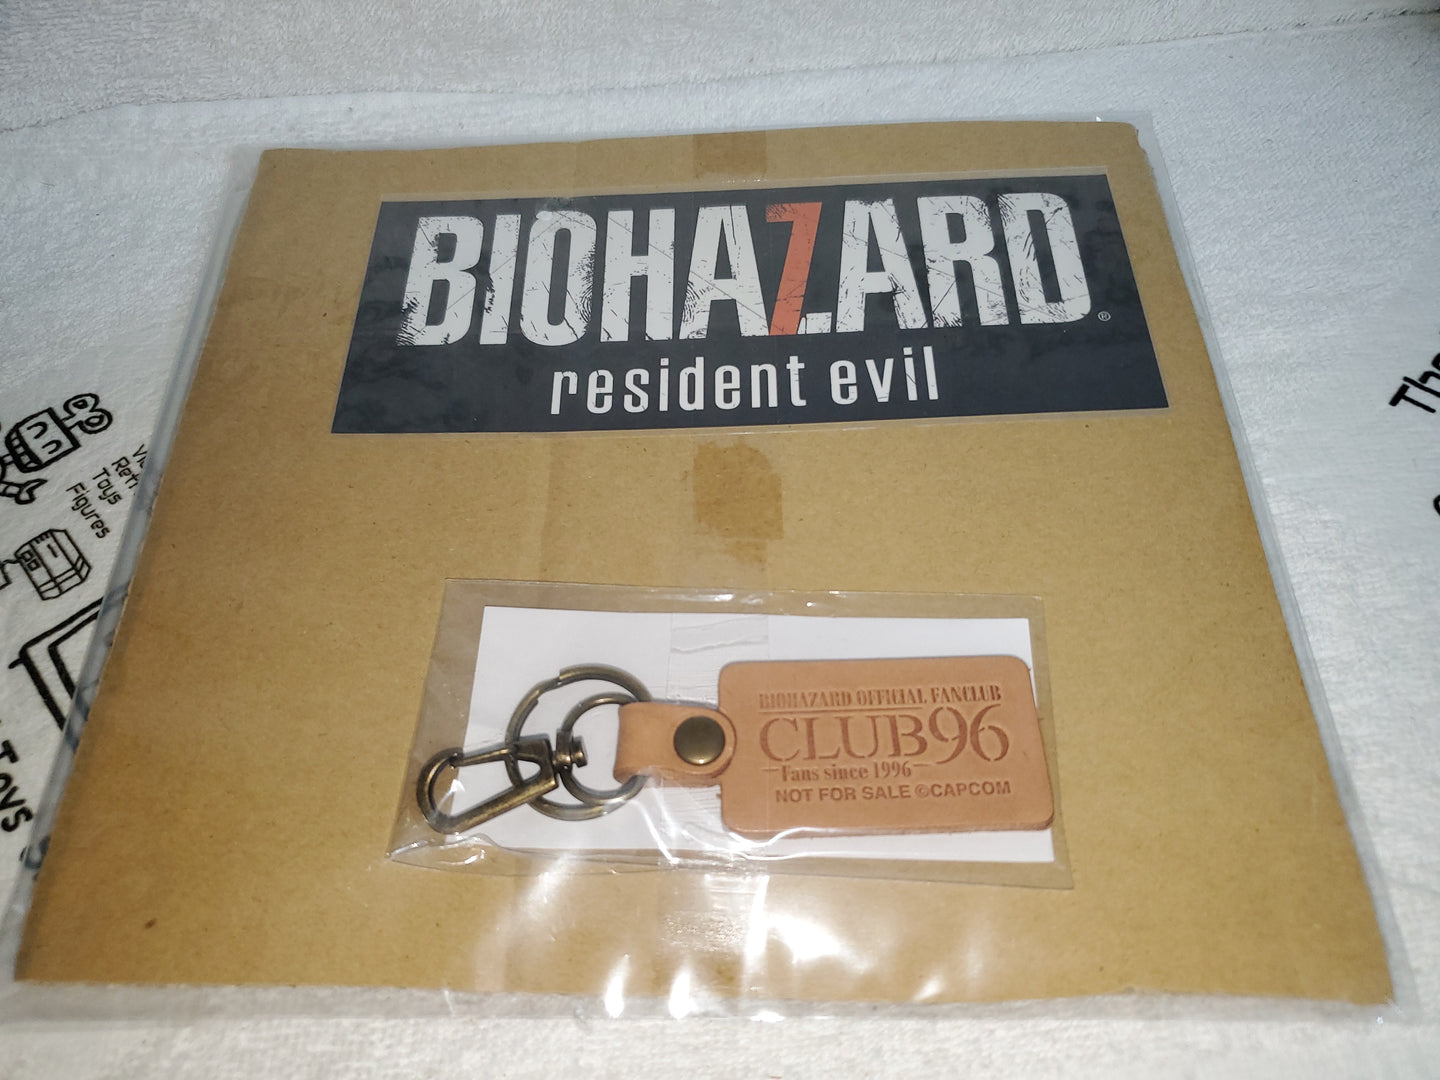 Biohazard club96 keychain + sticker - toy action figure model